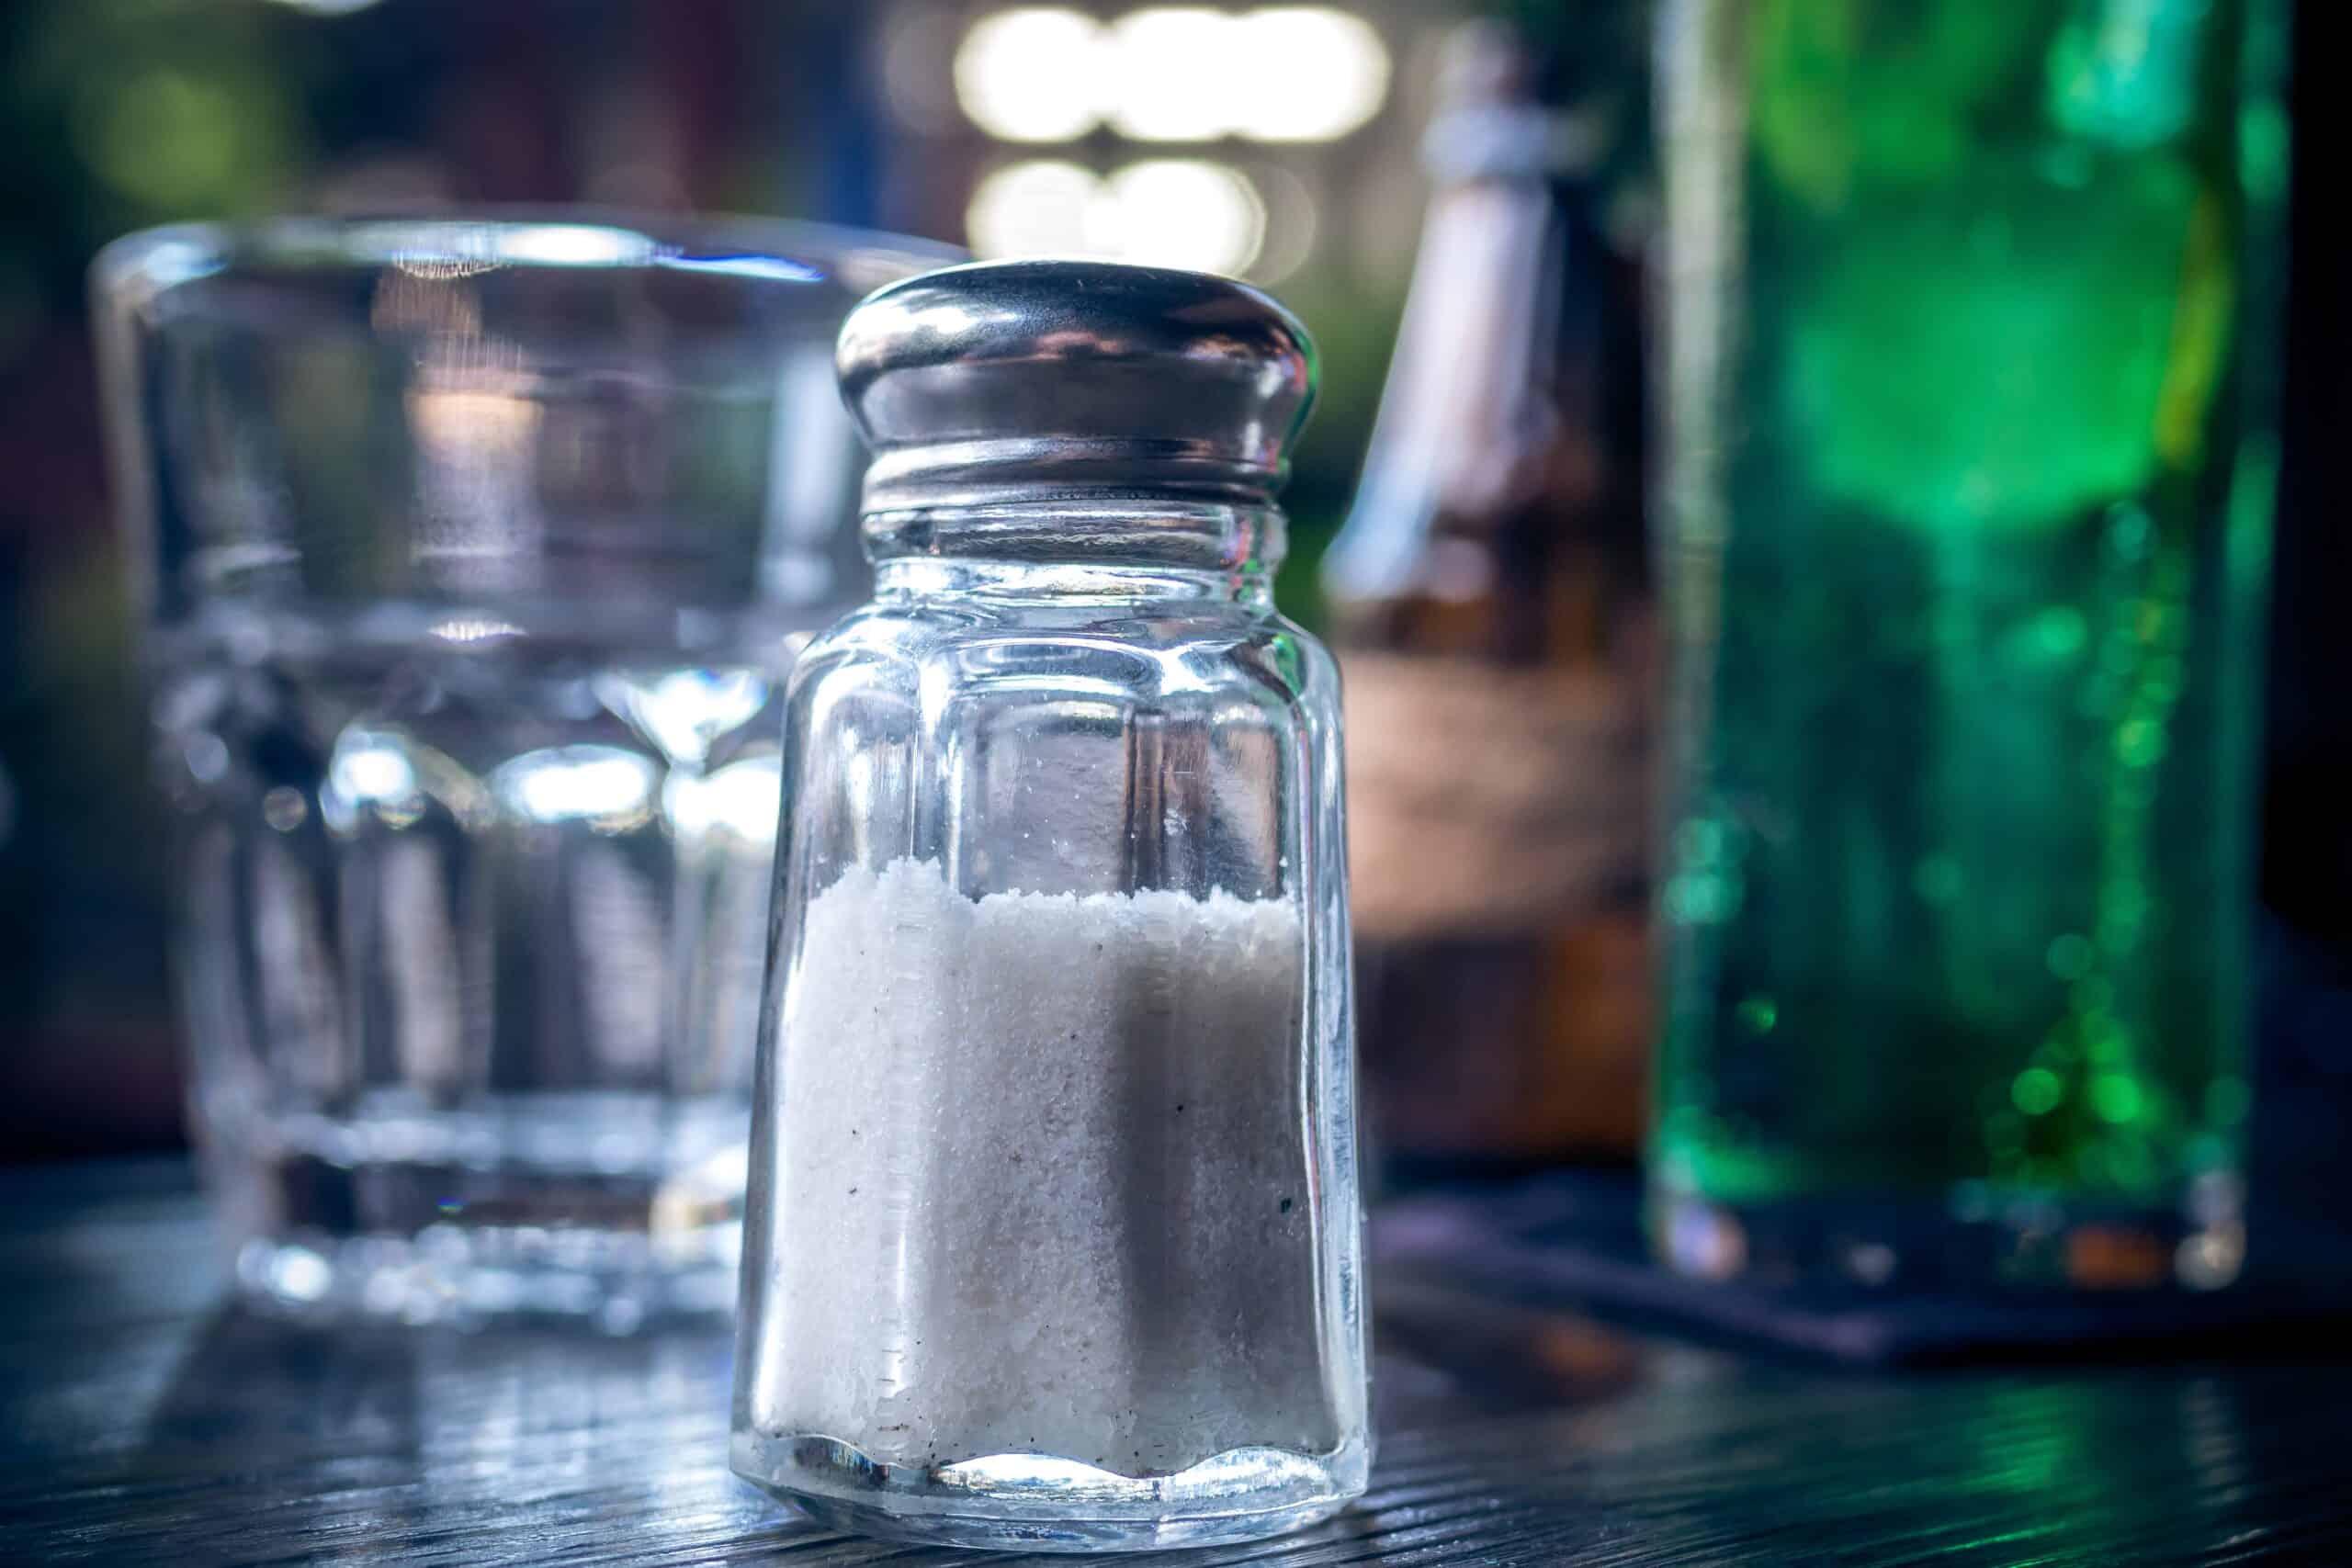 Salt shaker on table